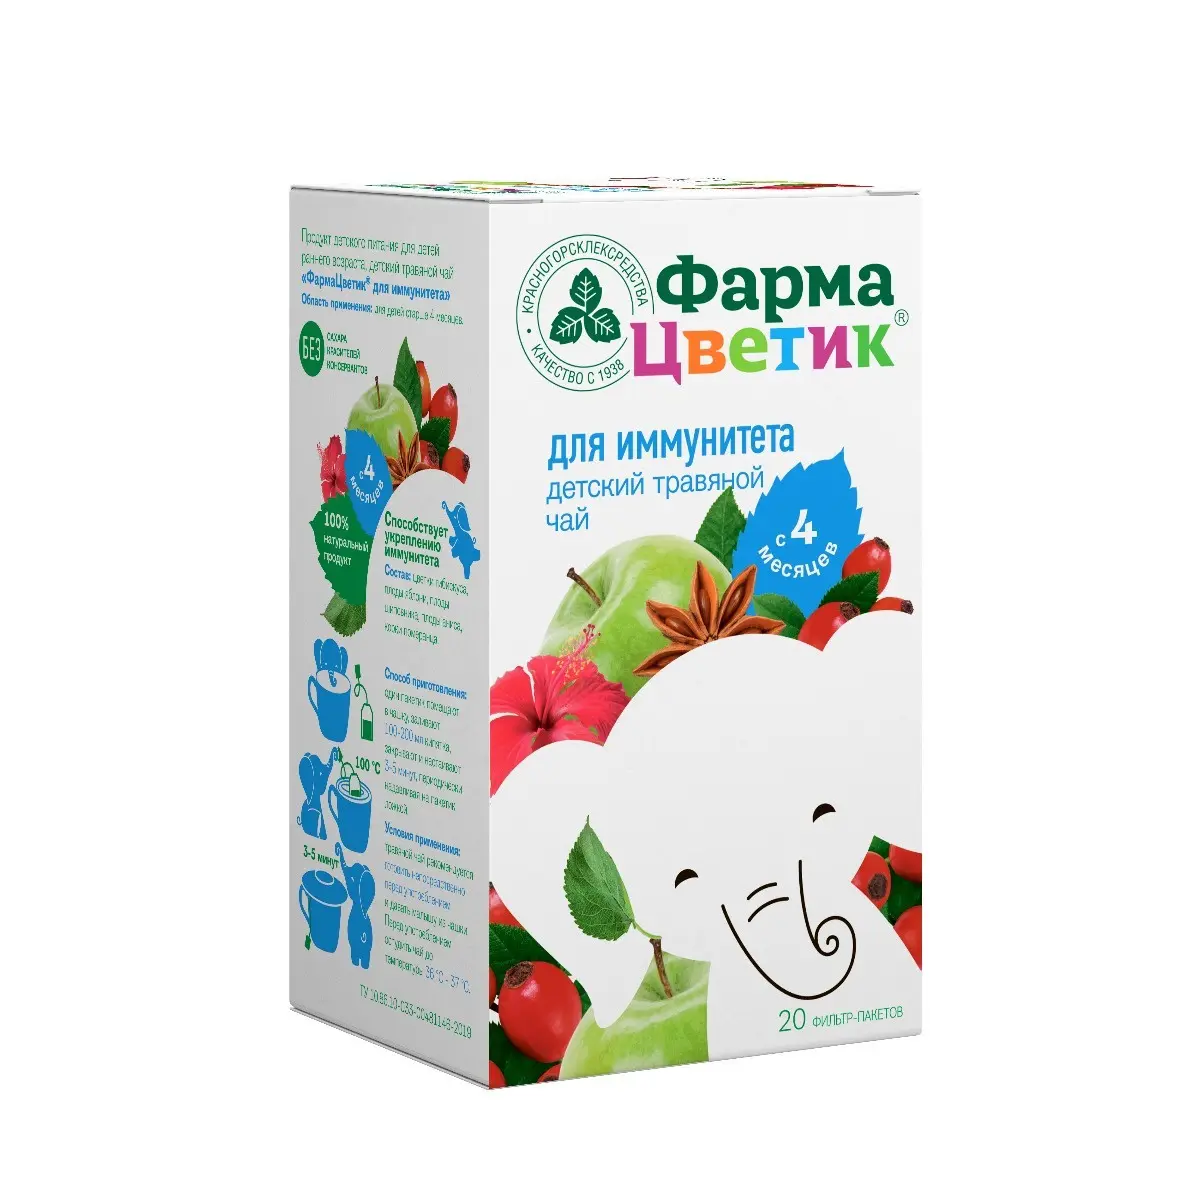 ФАРМАЦВЕТИК для иммунитета чай травяной детский (фильтр-пак.) 1.5г N20 (КРАСНОГОРСКЛЕКСРЕДСТВА, РФ)